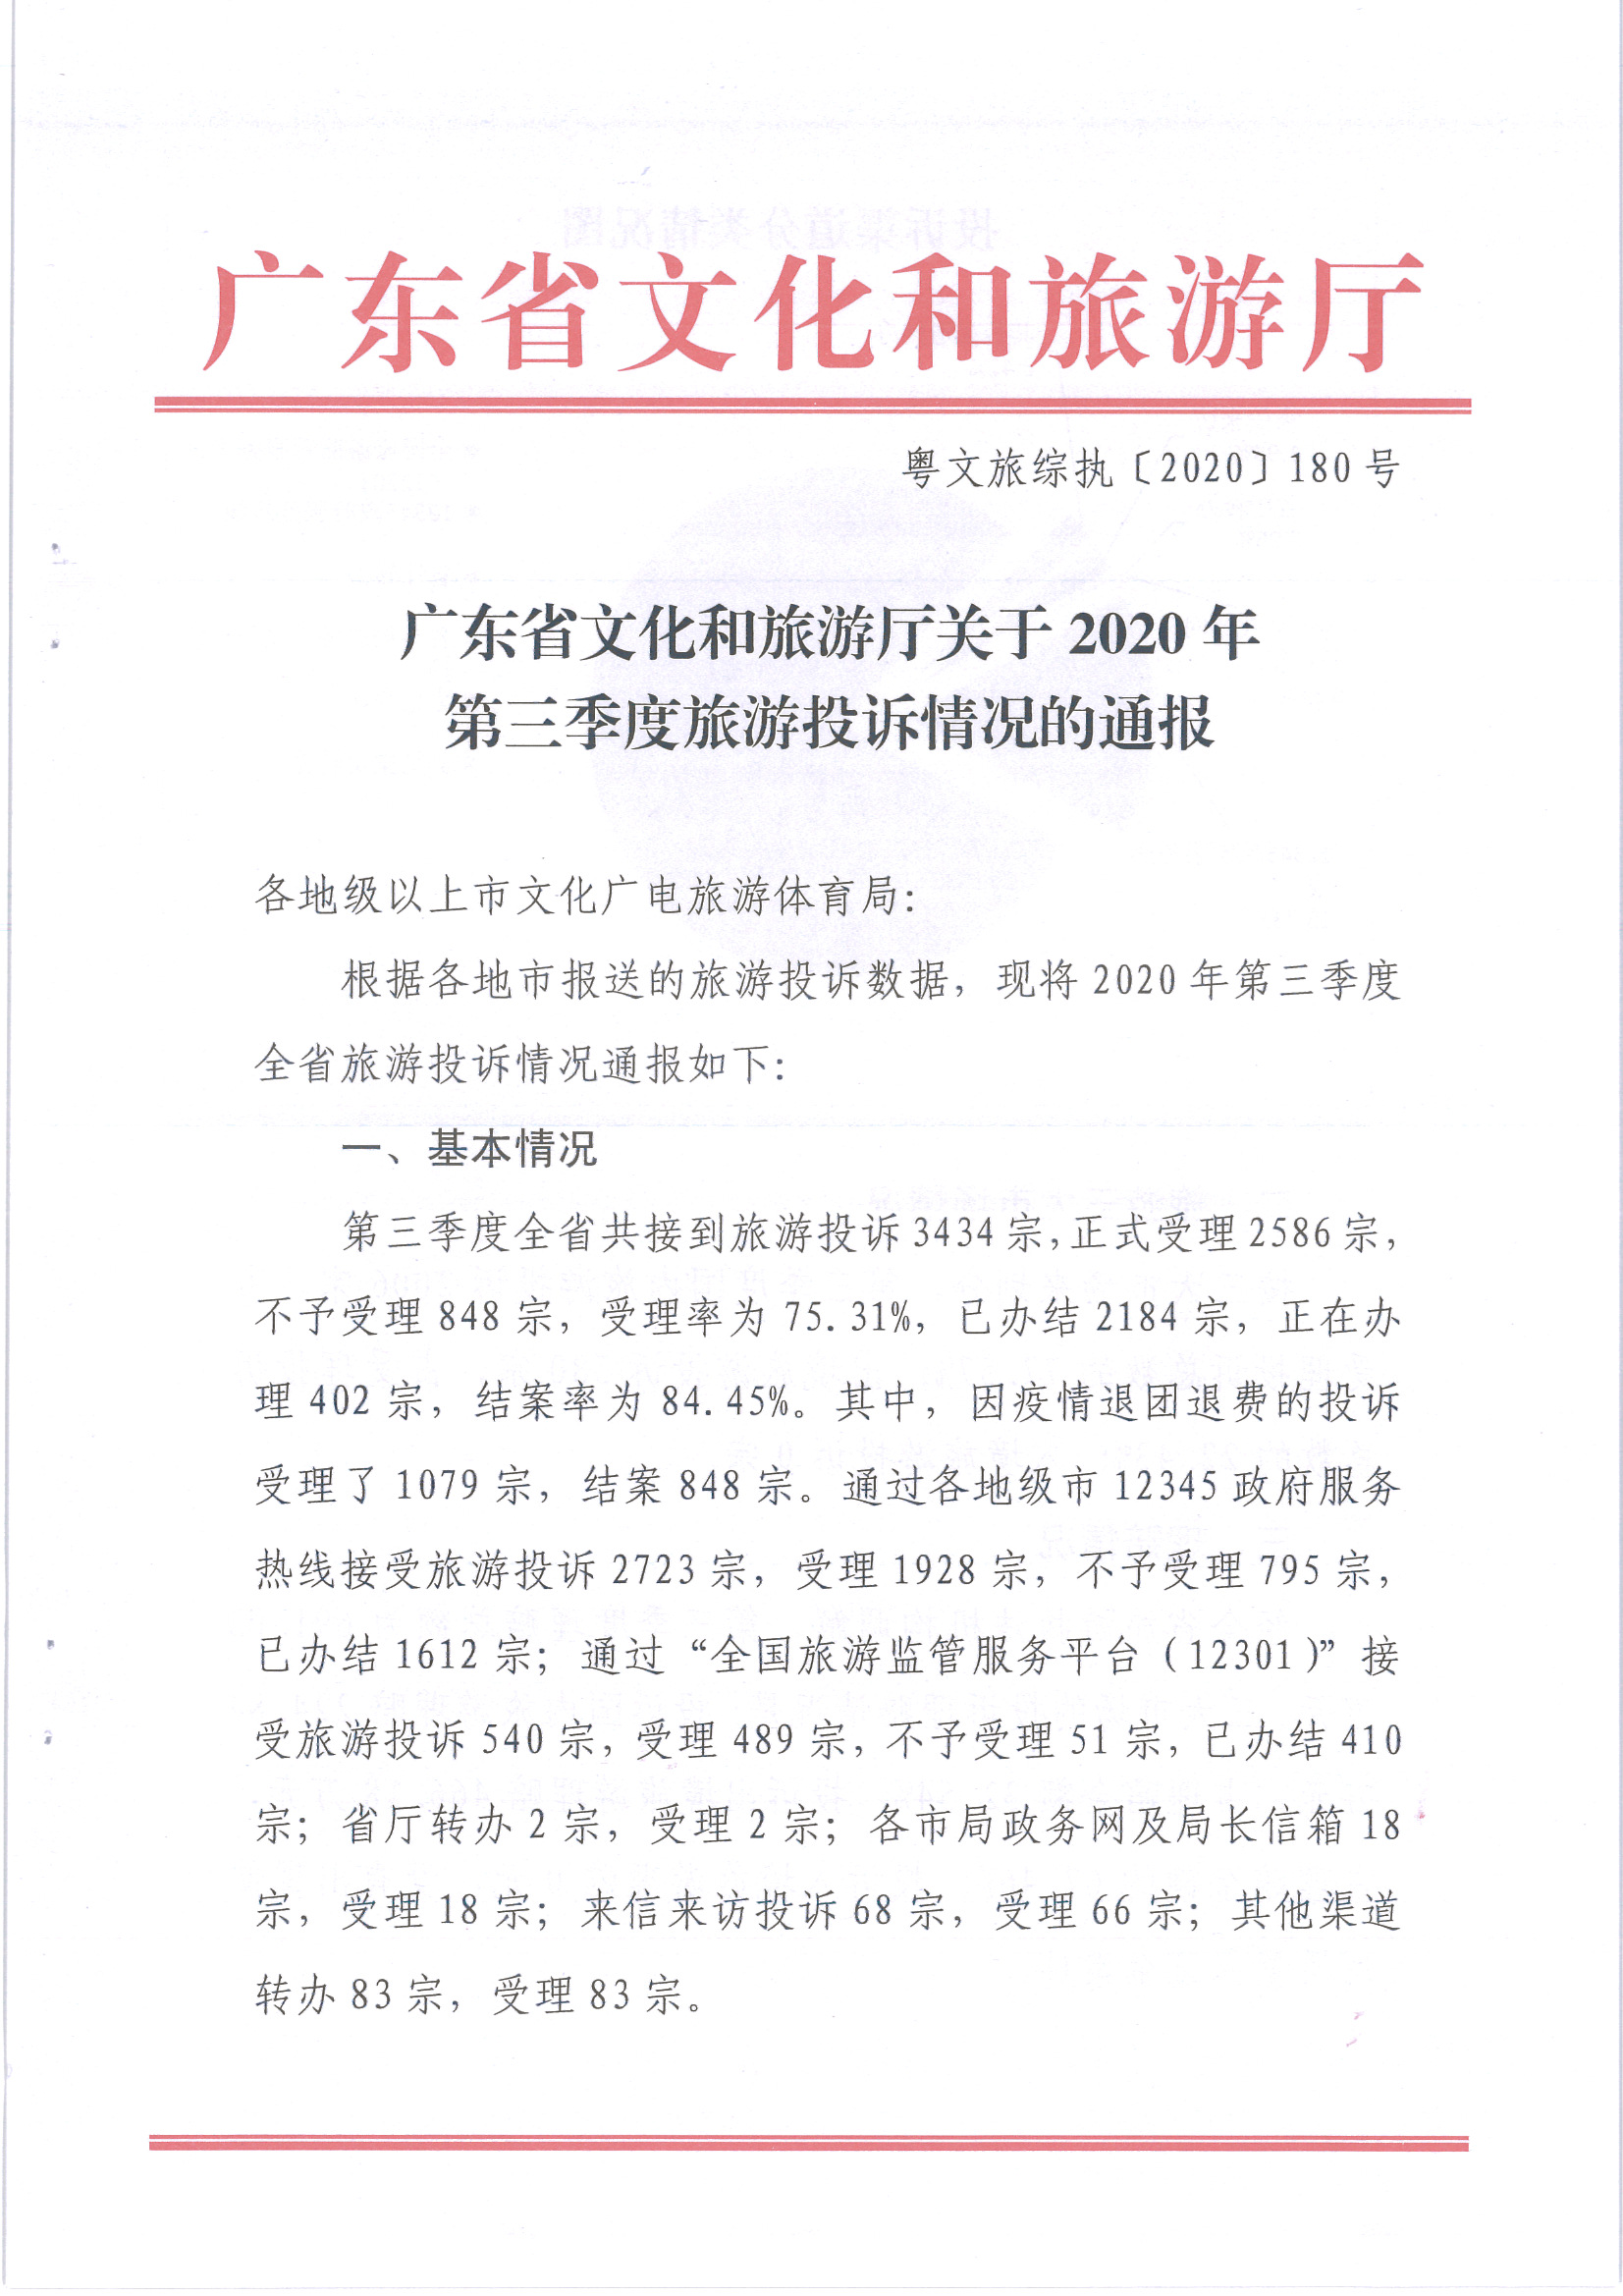 广东省文化和旅游厅关于2020年第三季度旅游投诉情况的通报_页面_1.jpg